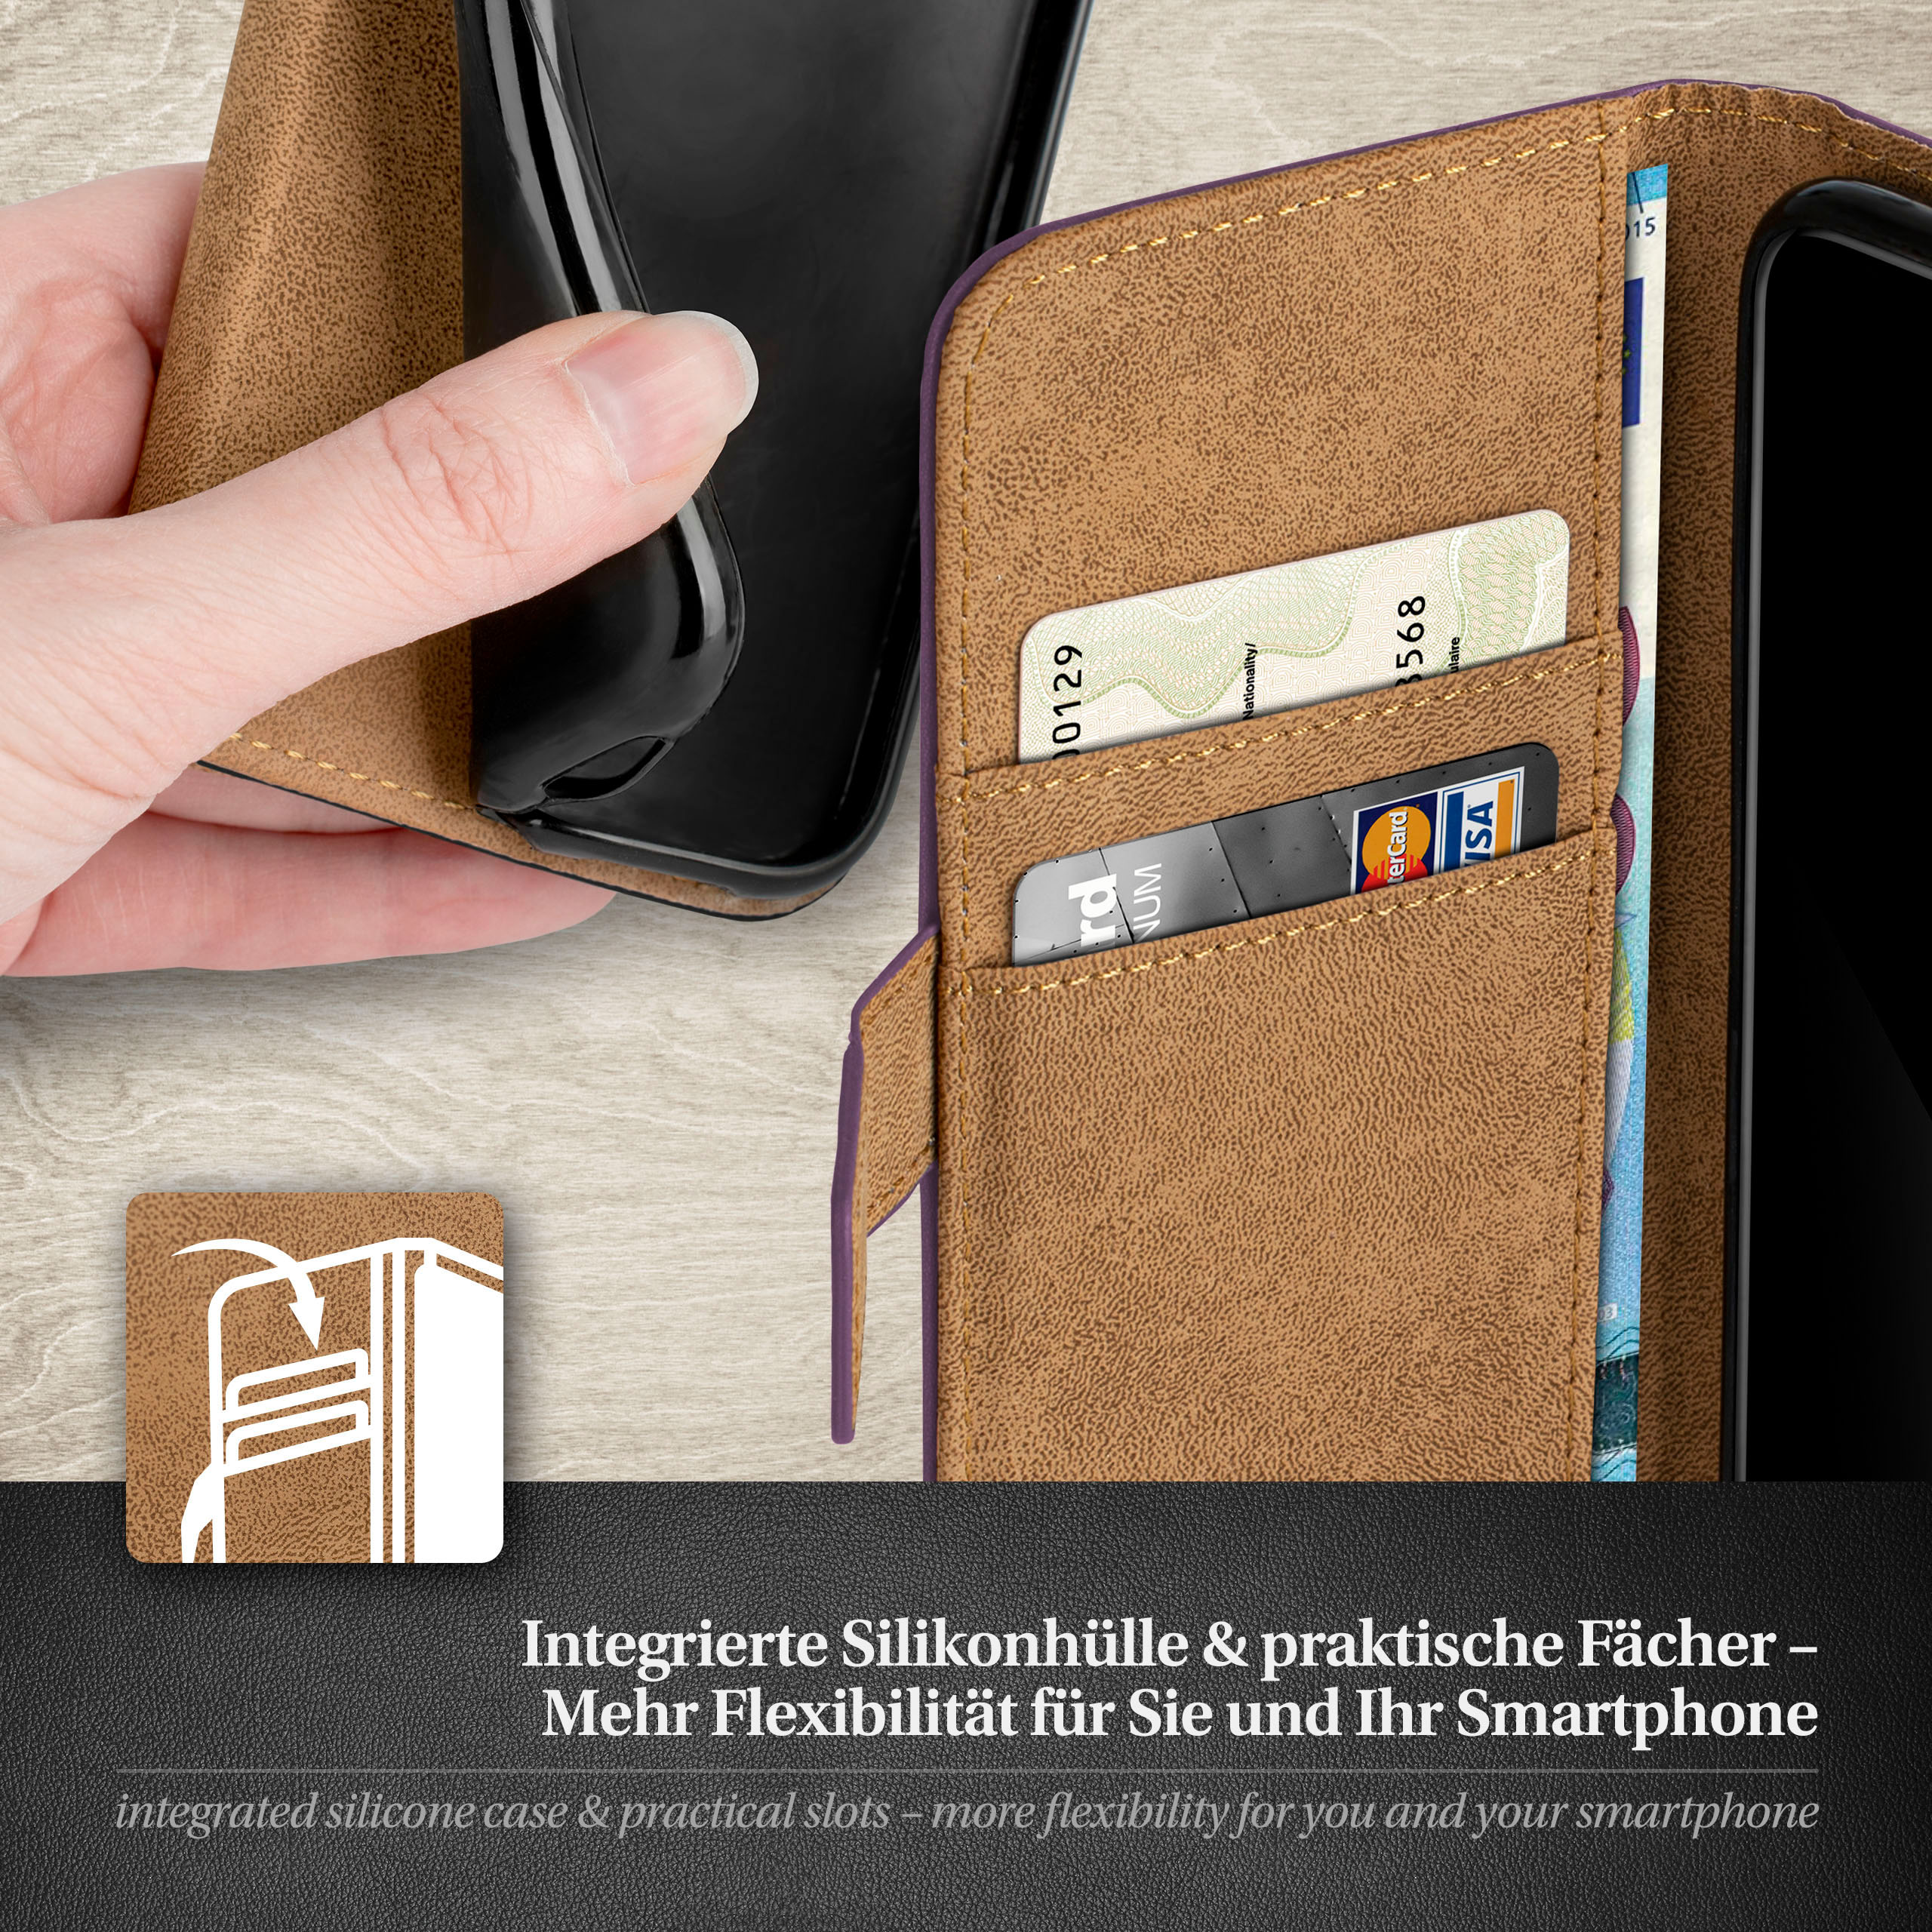 MOEX Book Case, Bookcover, Samsung, Galaxy Indigo-Violet S9